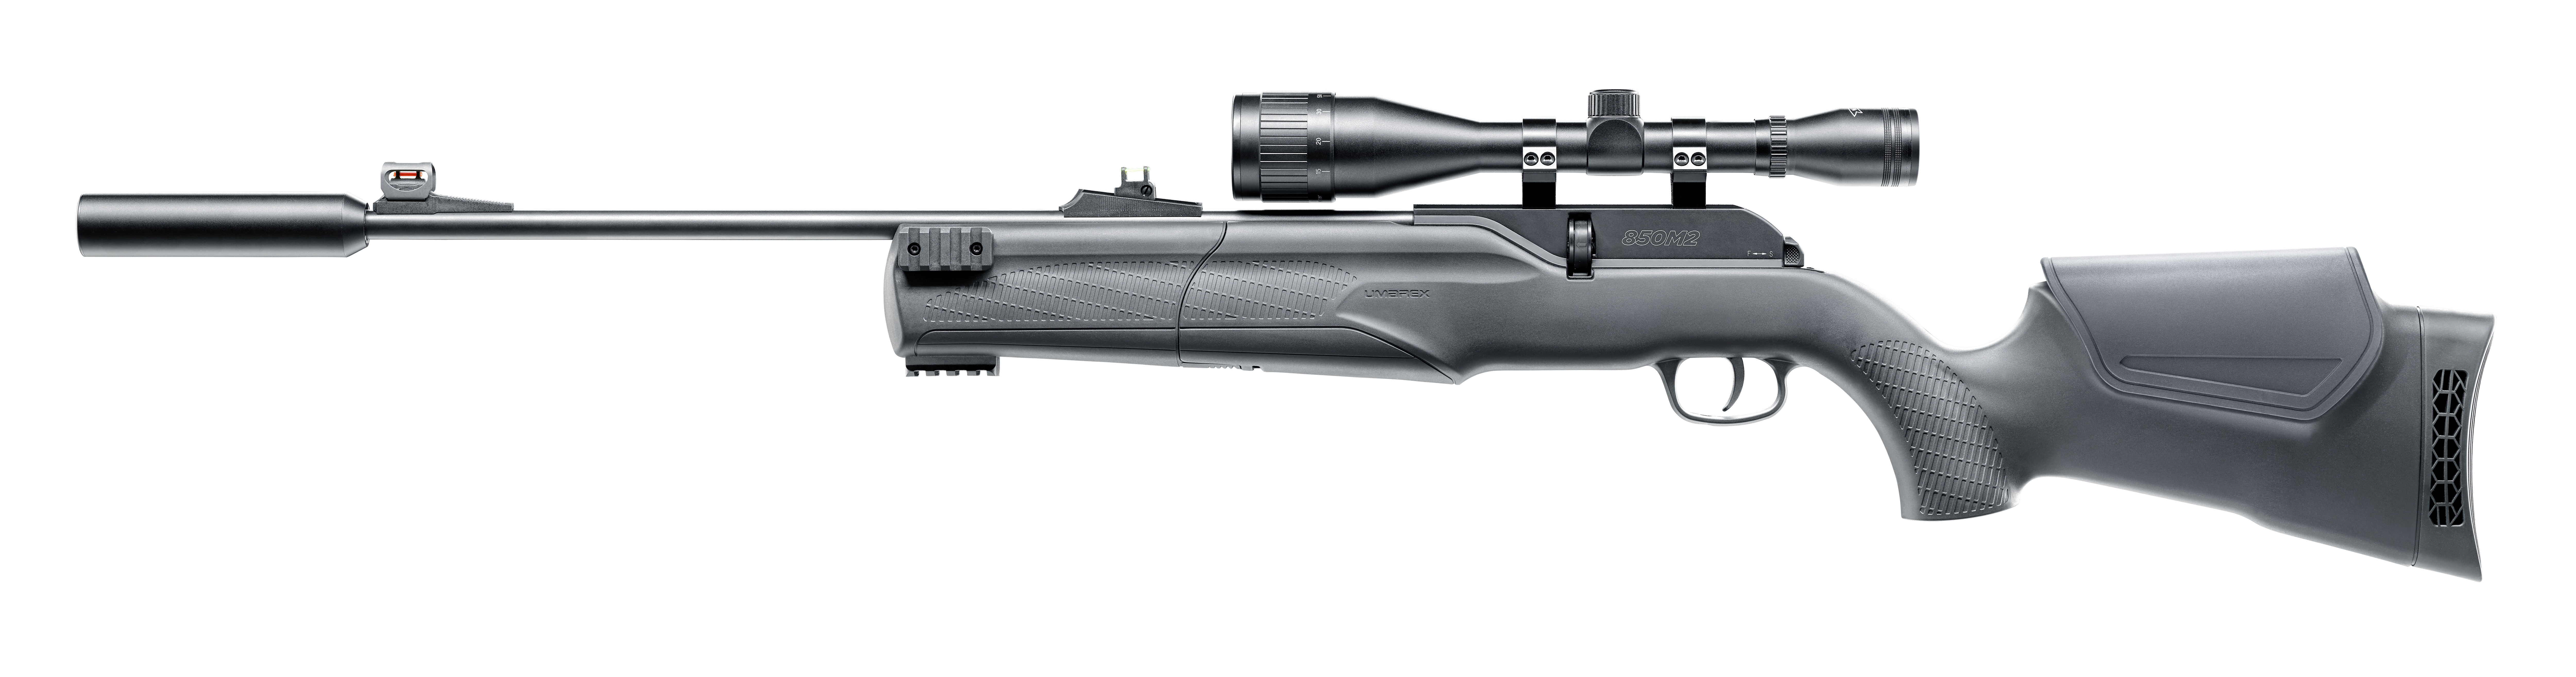 UMAREX CO2 Airgun 850 M2 Target Kit